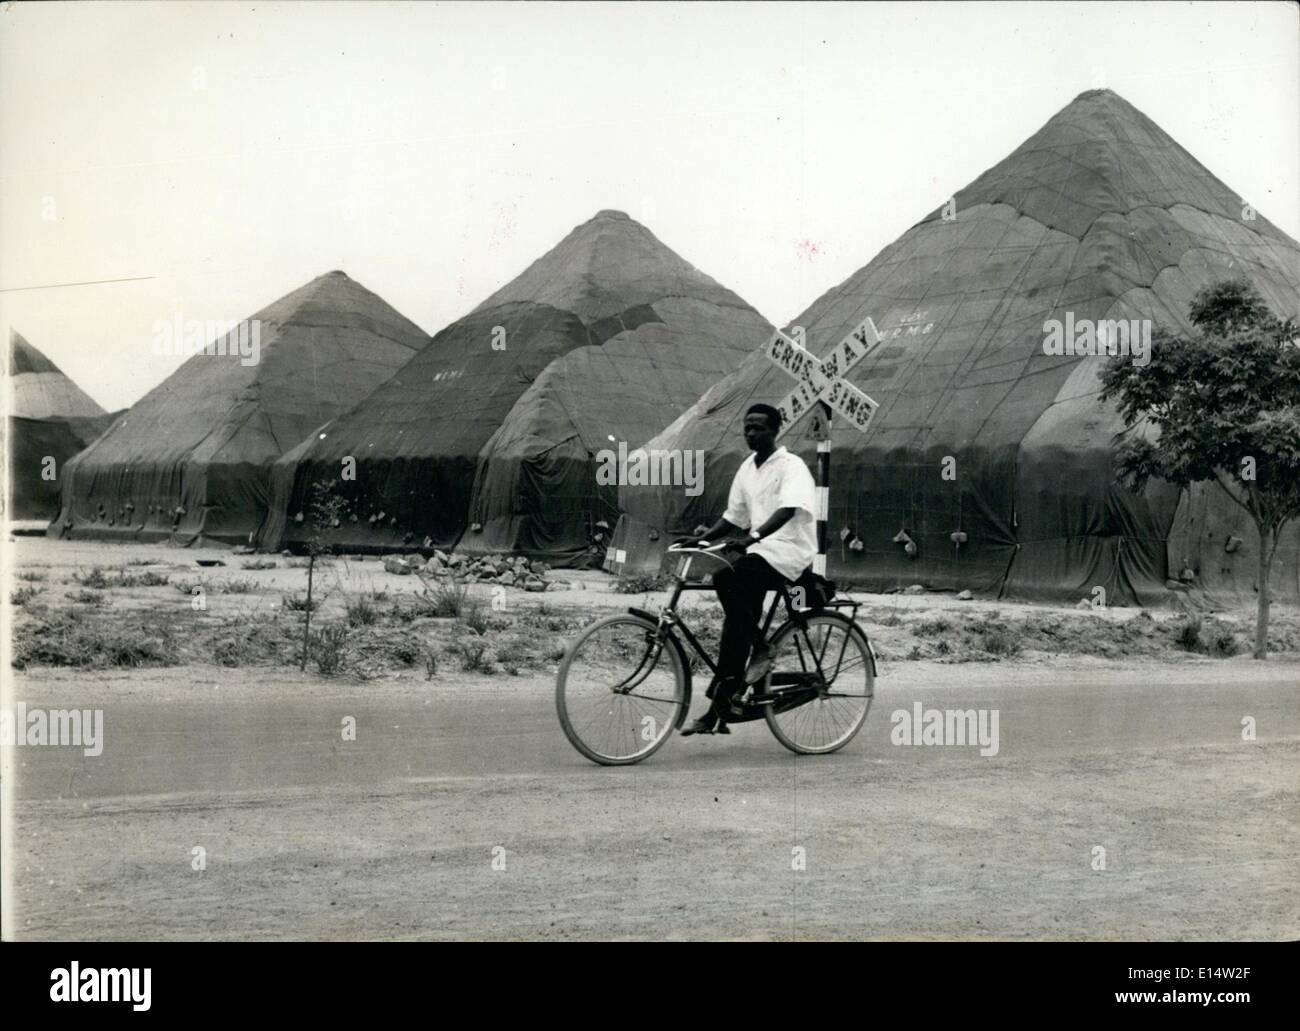 Abril 18, 2012 - ''Bancos de Nigeria'' : Algunas de las numerosas pirámides de cacahuetes - cacahuetes a la Occidental - que son la base de un importante producto de exportación. Foto de stock